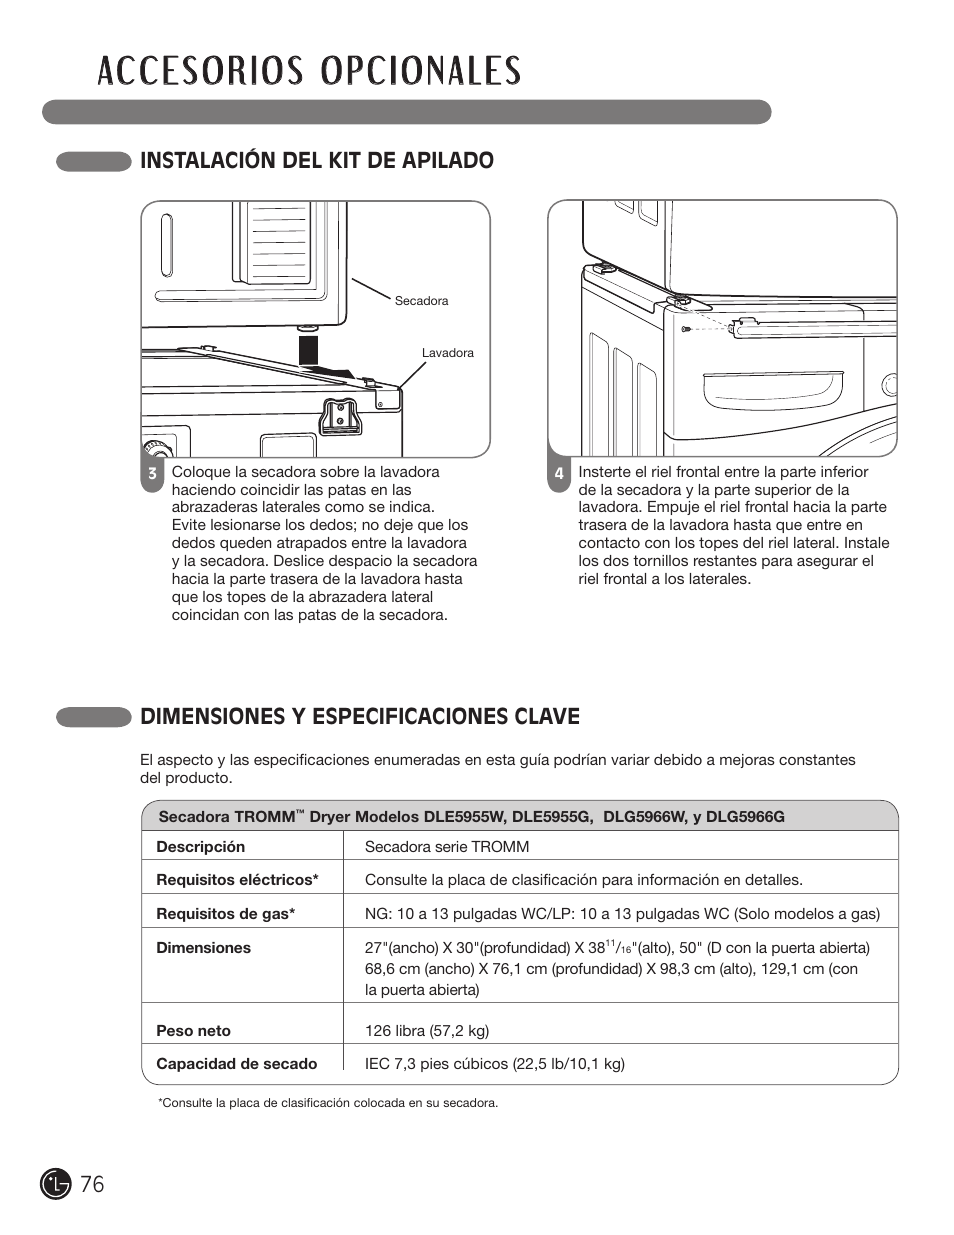 Instalación del kit de apilado, Dimensiones y especificaciones clave | LG D5966W User Manual | Page 76 / 80